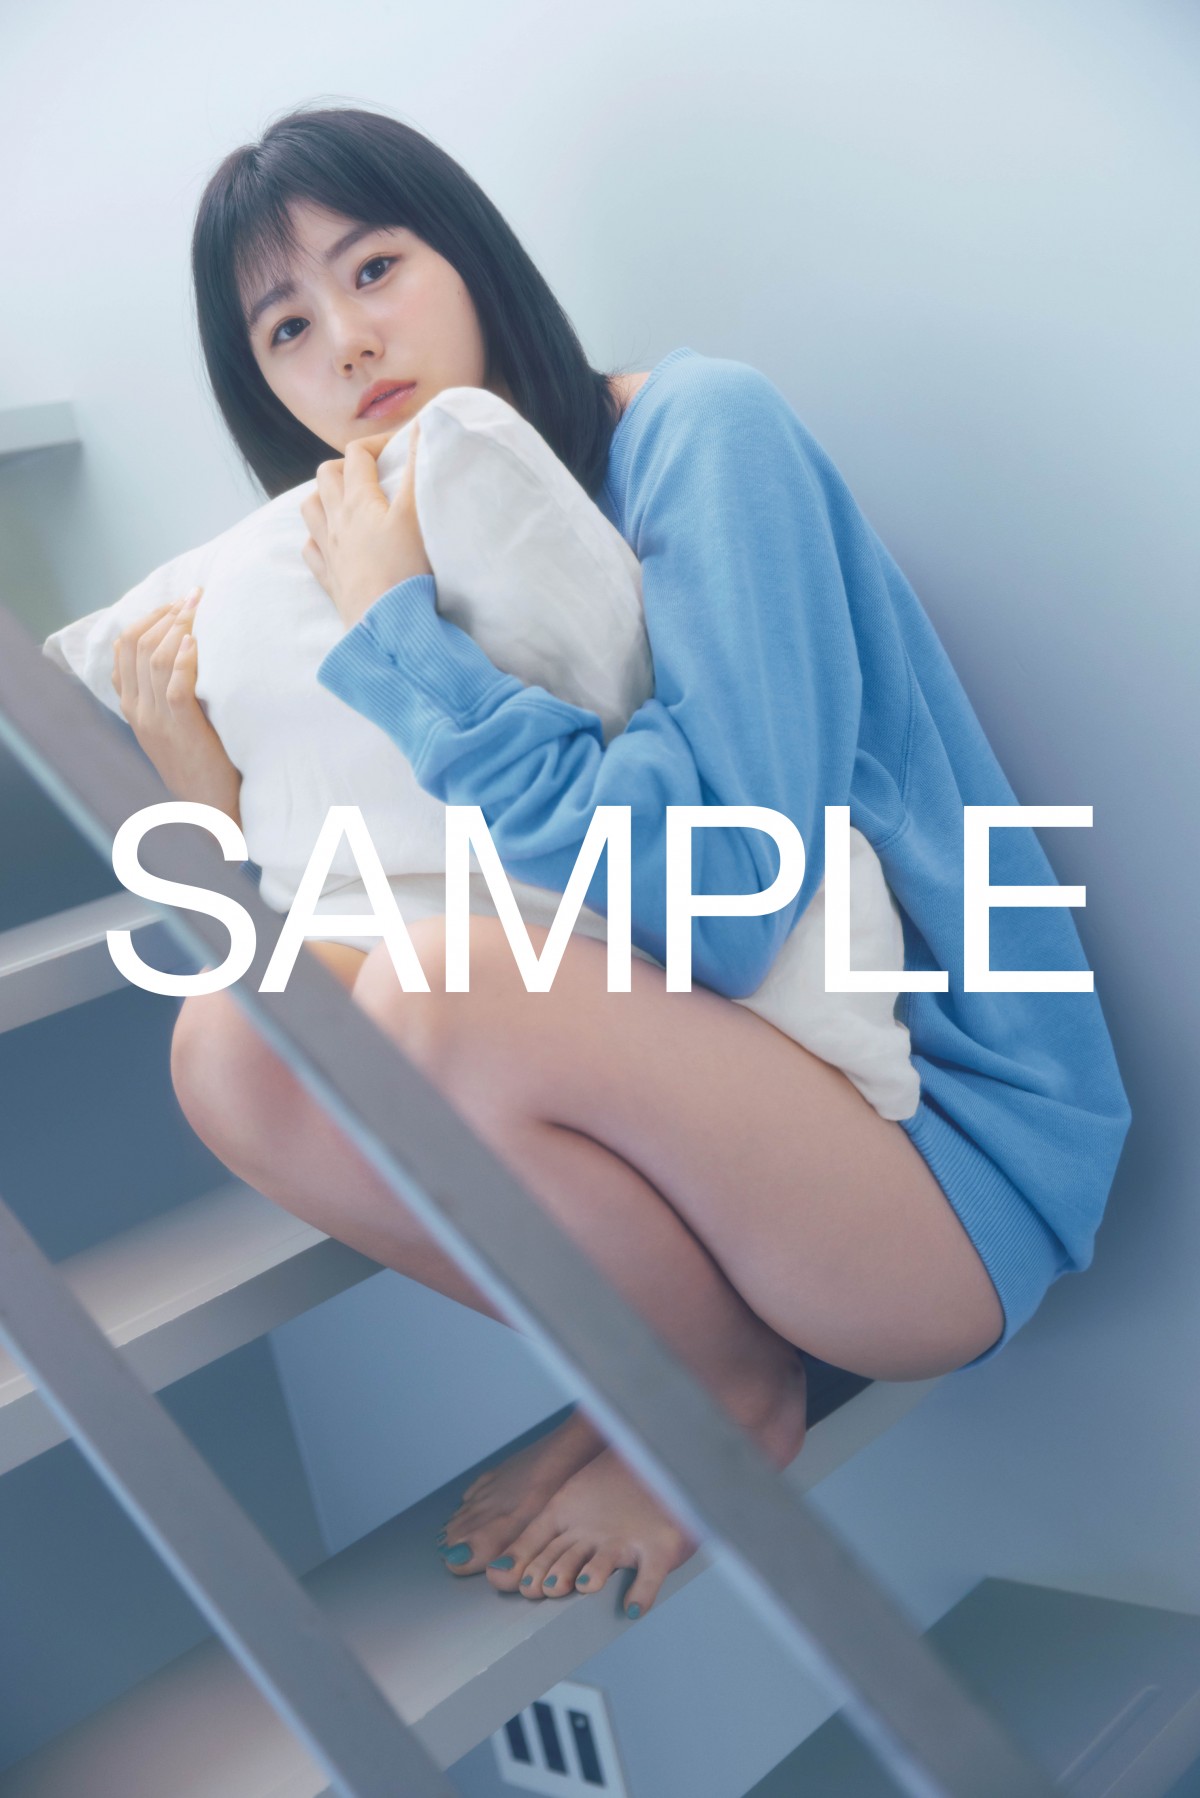 STU48瀧野由美子、輝くような圧巻美脚で魅了 写真集ポストカード画像が解禁 | ORICON NEWS